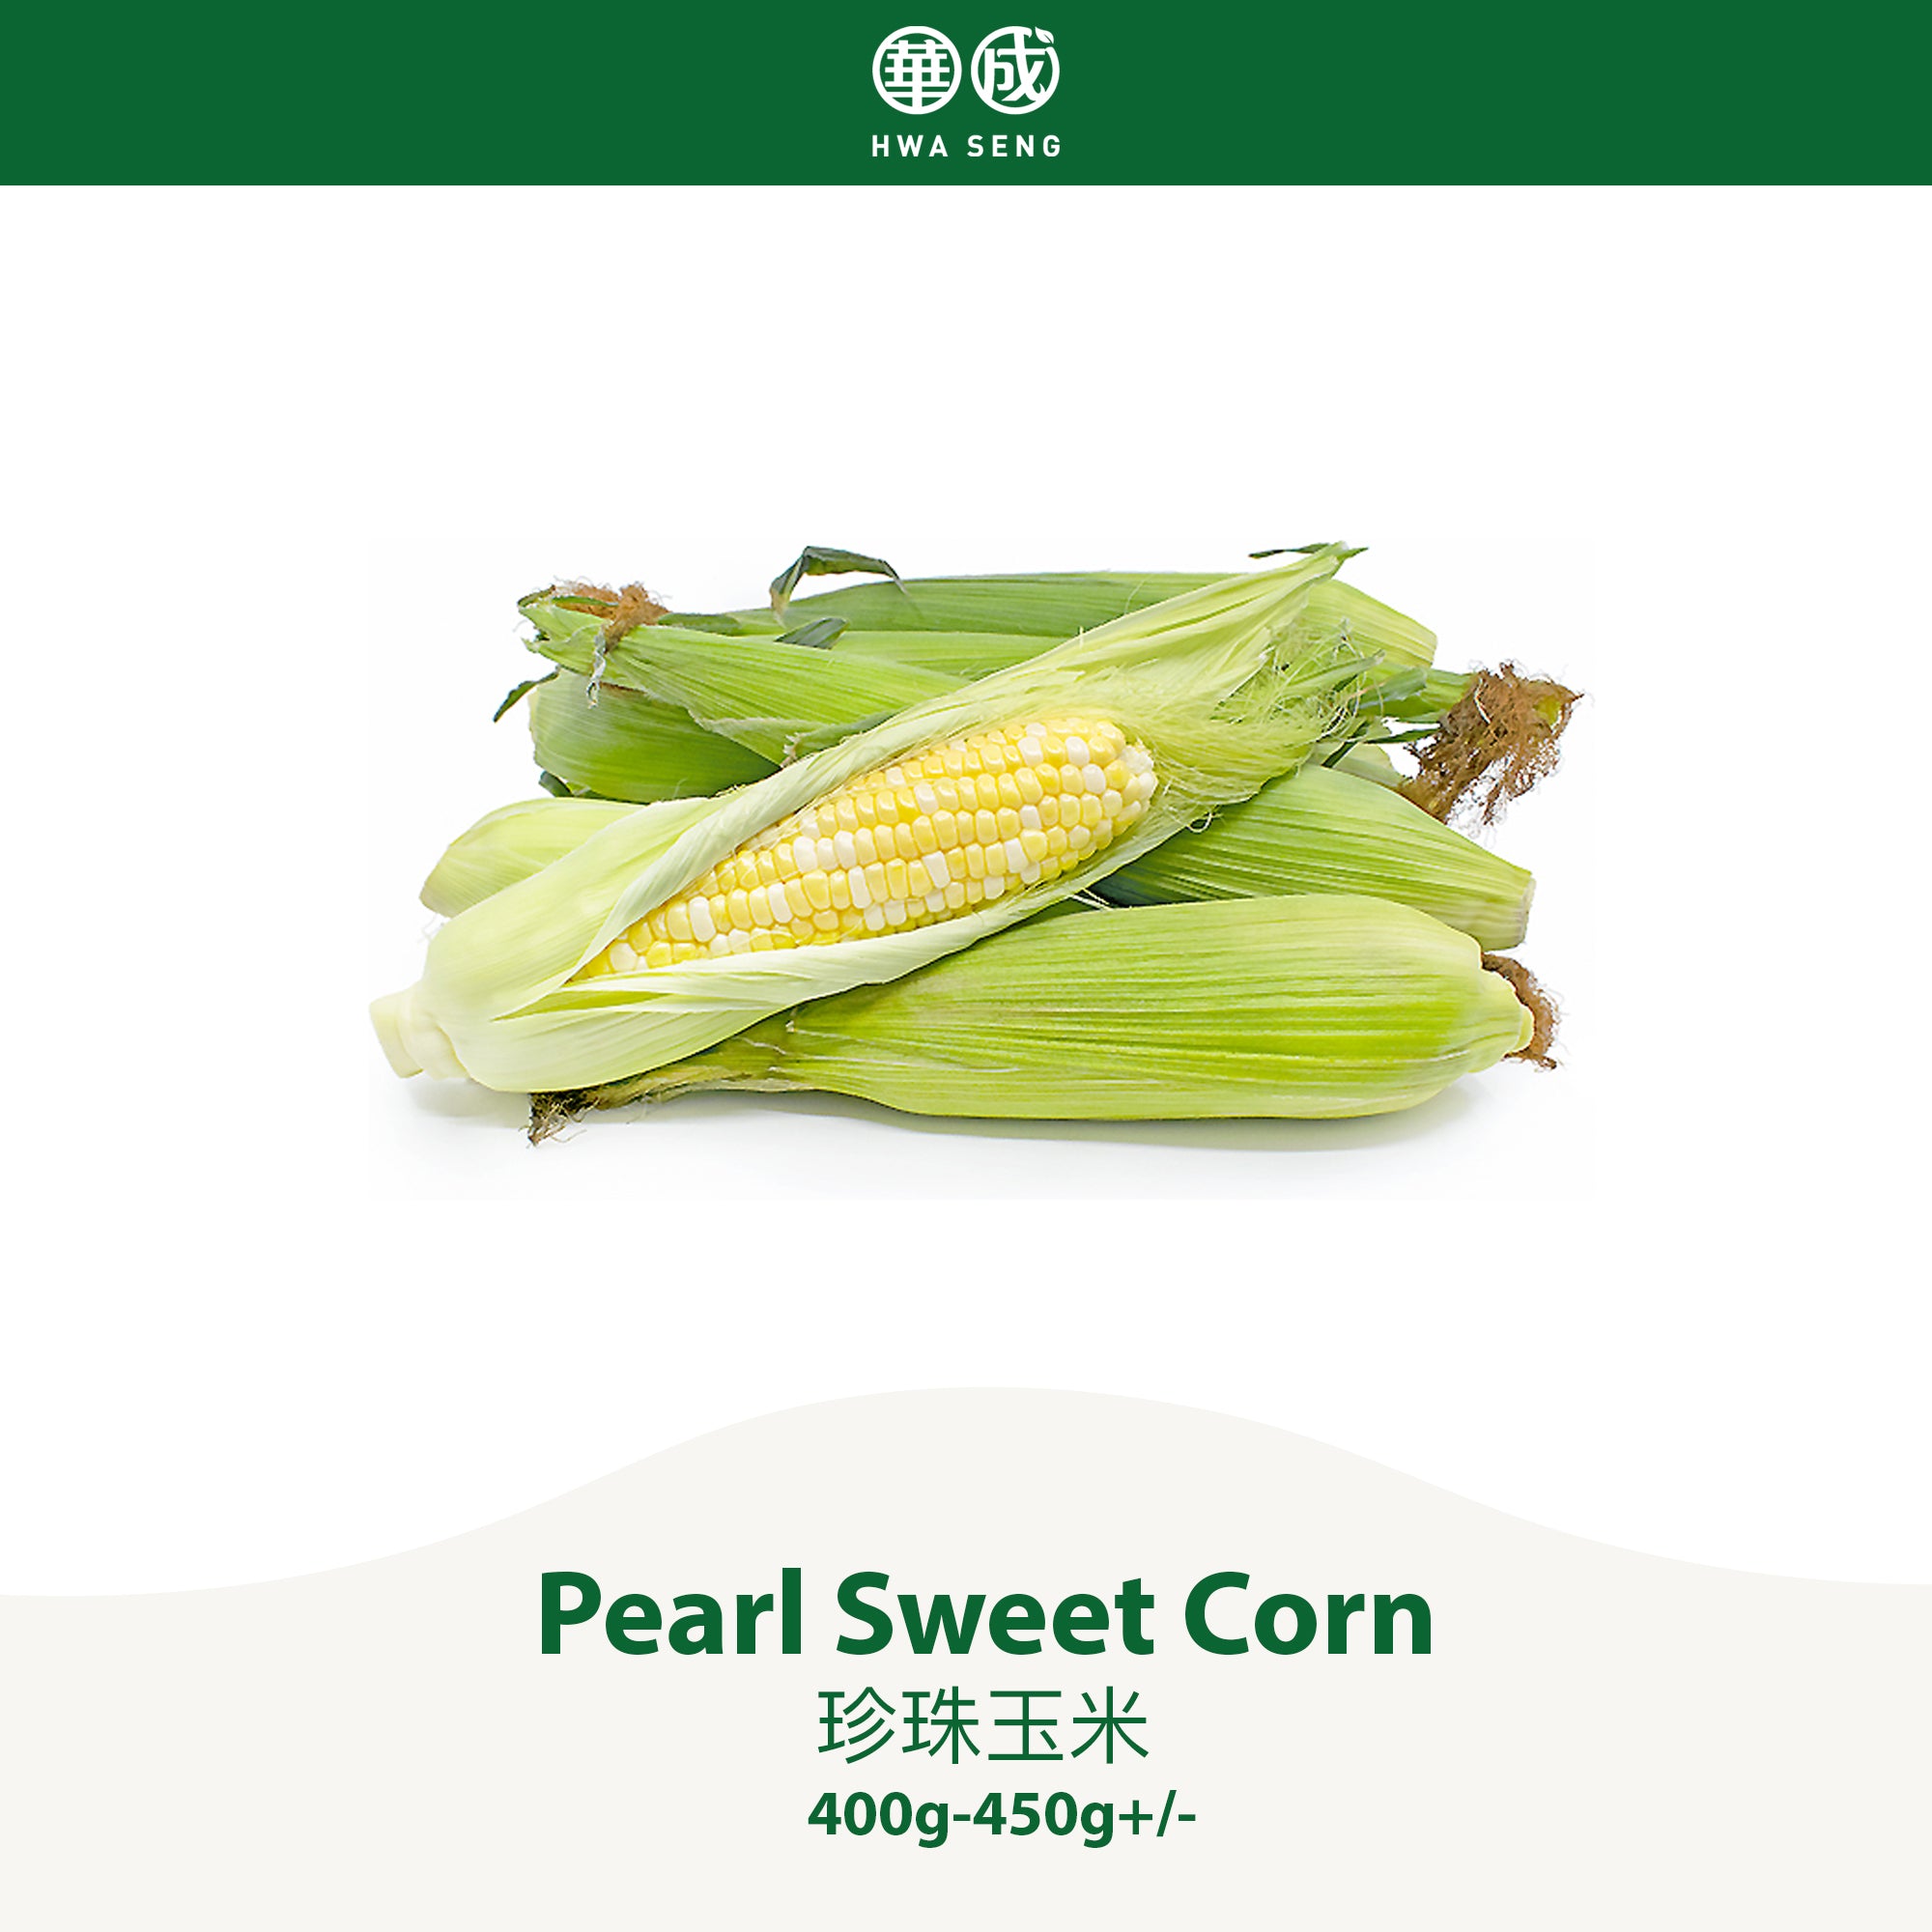 Pearl Sweet Corn 珍珠玉米 1pc